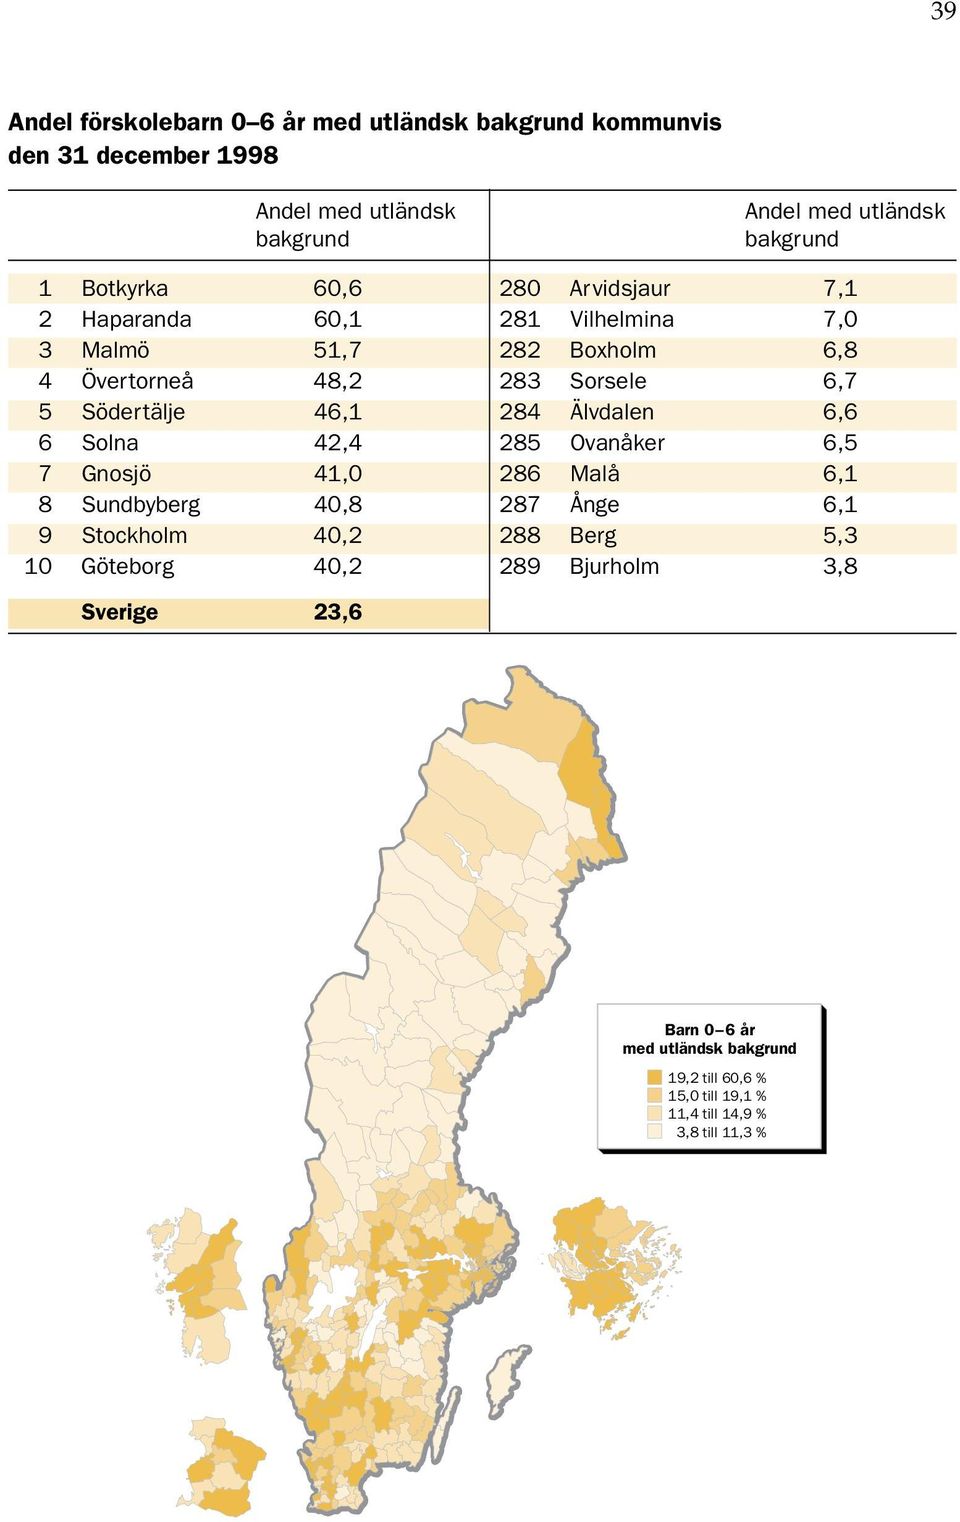 Södertälje 46,1 284 Älvdalen 6,6 6 Solna 42,4 285 Ovanåker 6,5 7 Gnosjö 41, 286 Malå 6,1 8 Sundbyberg 4,8 287 Ånge 6,1 9 Stockholm 4,2 288